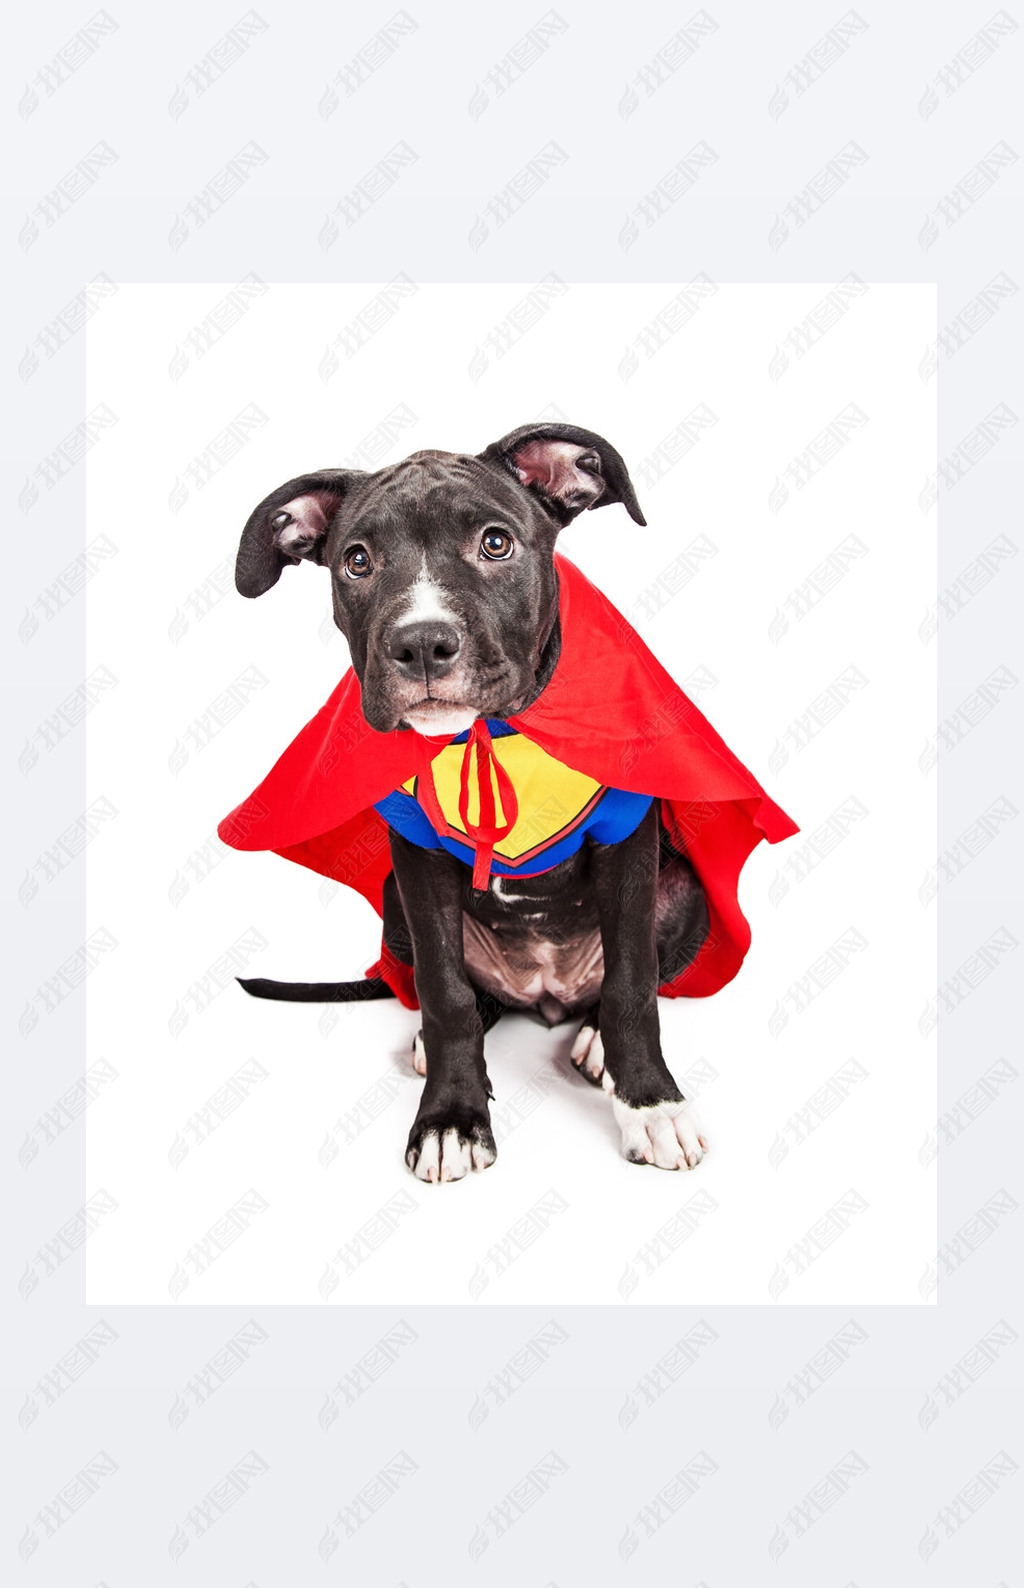 Superhero puppy dog wearing vest